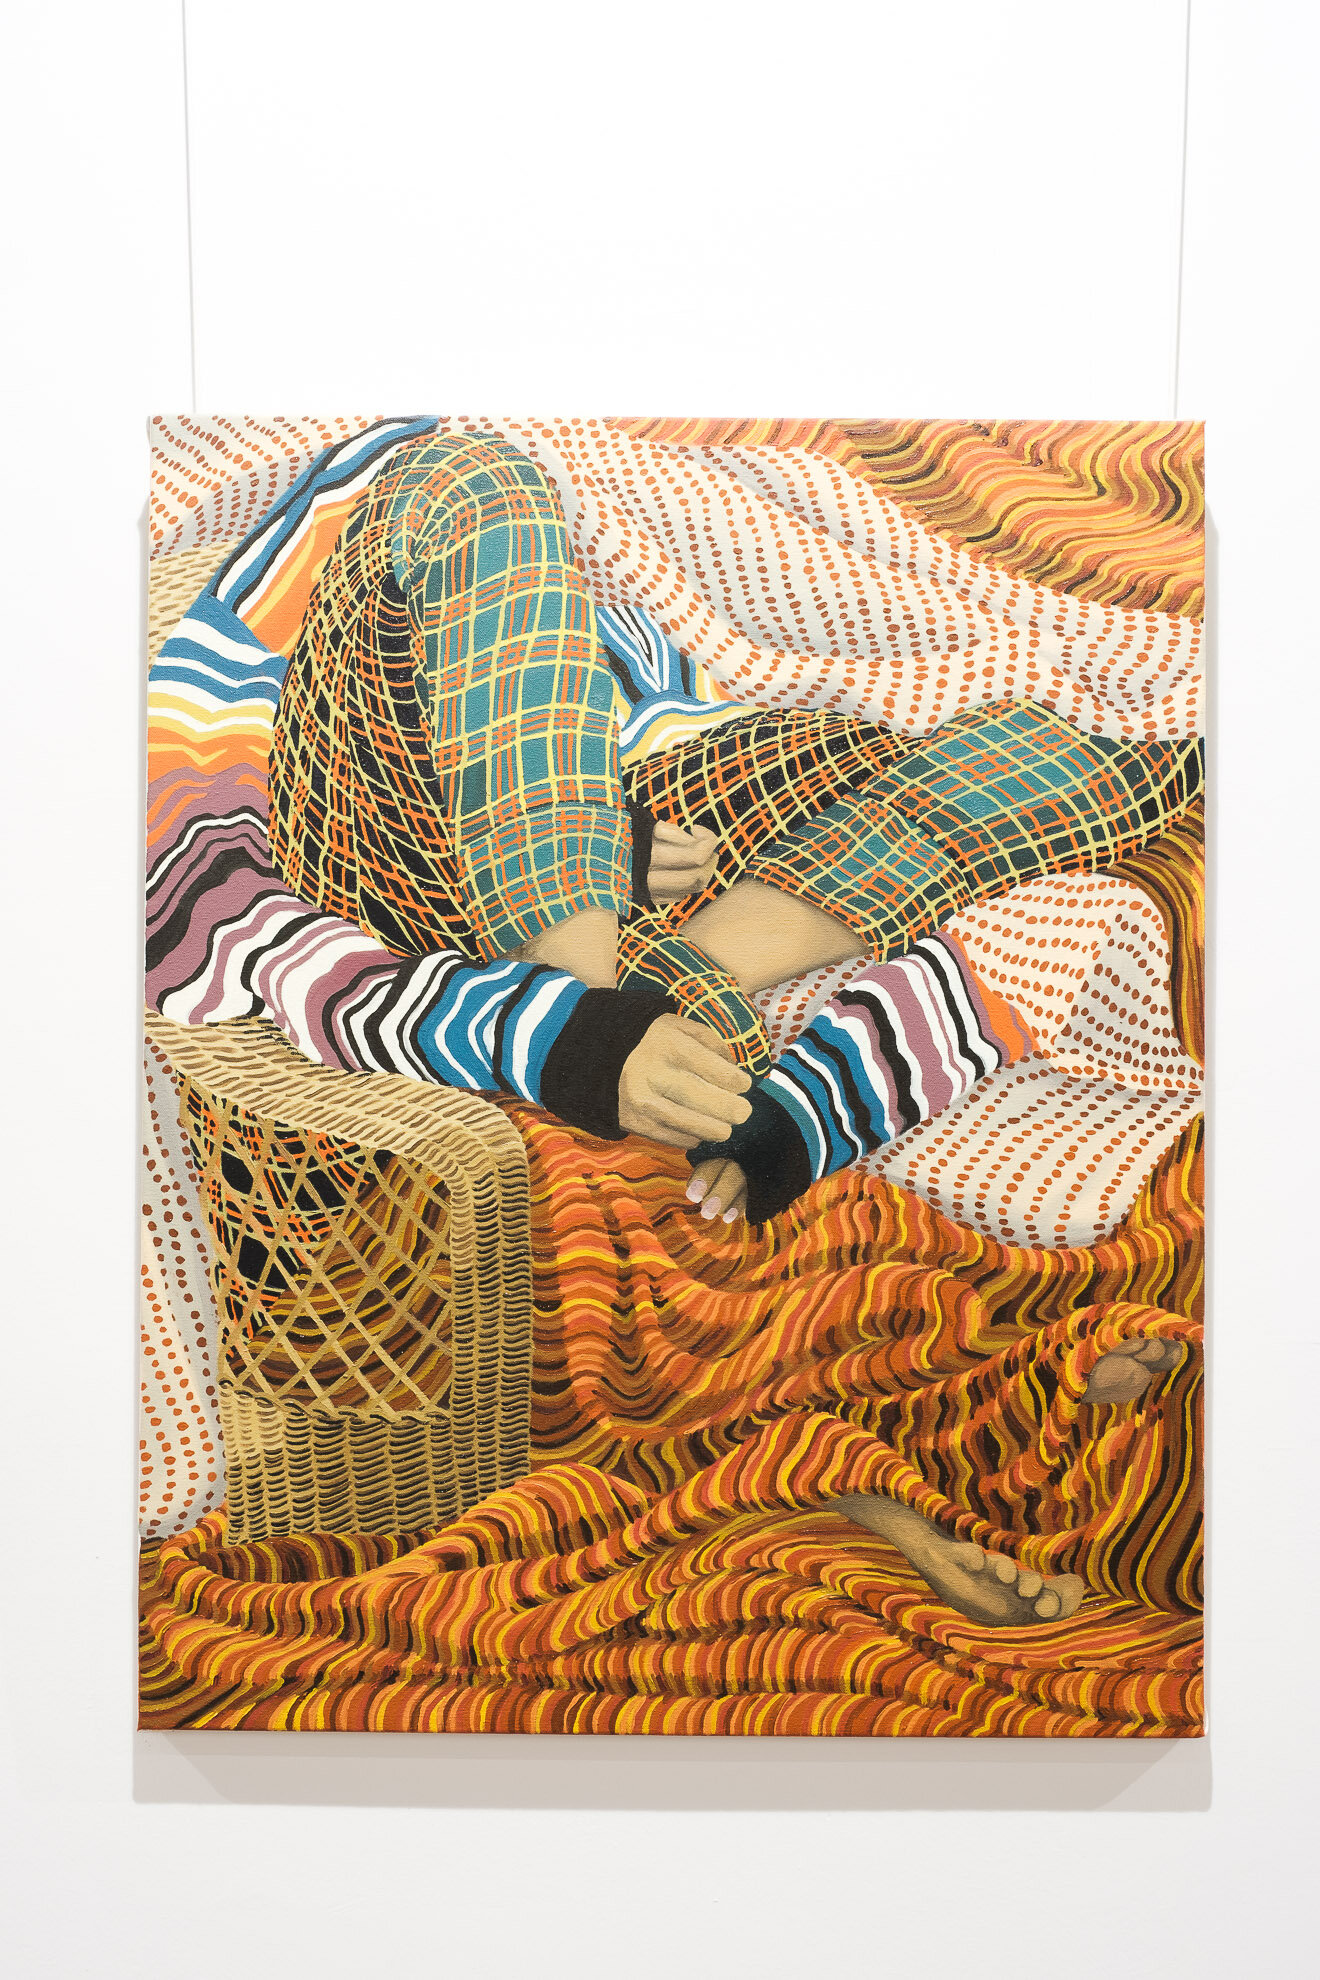   Malaika , 2019, oil on canvas, 64x75 cm 